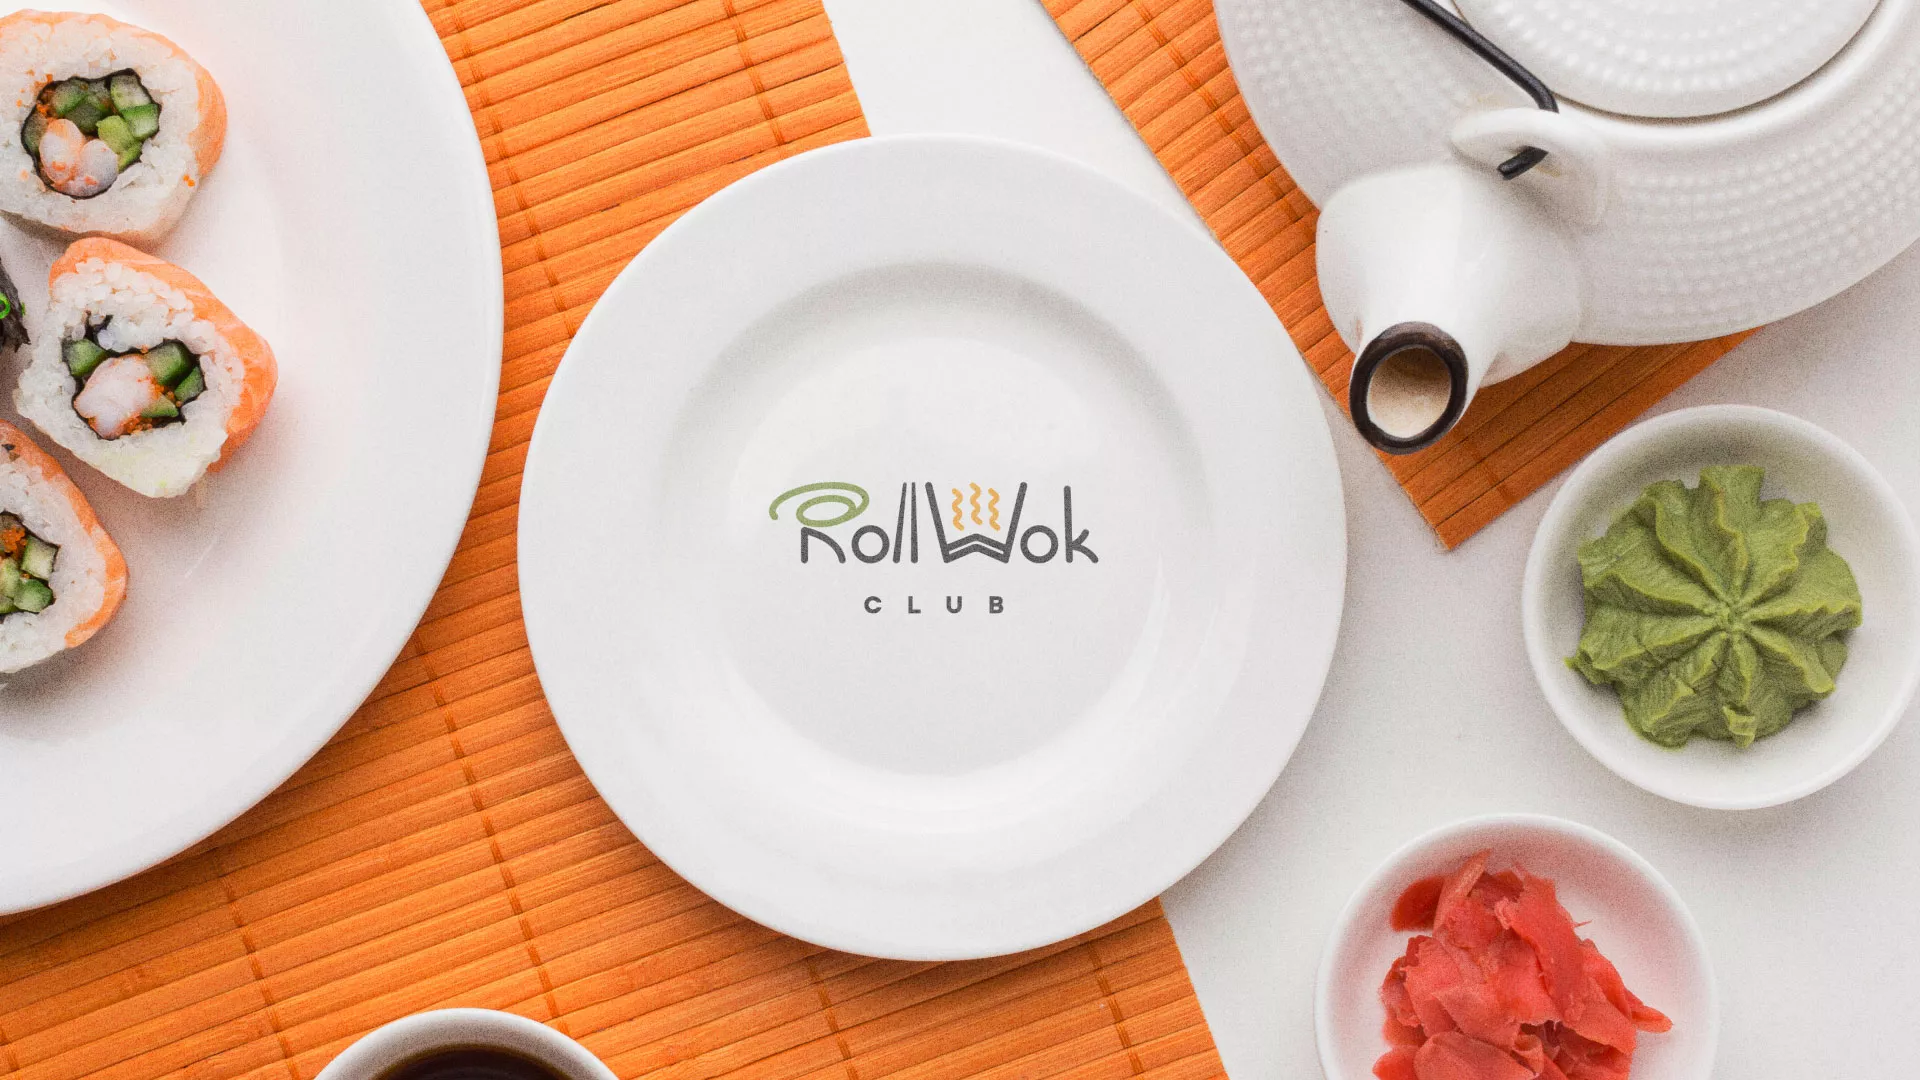 Разработка логотипа и фирменного стиля суши-бара «Roll Wok Club» в Мончегорске